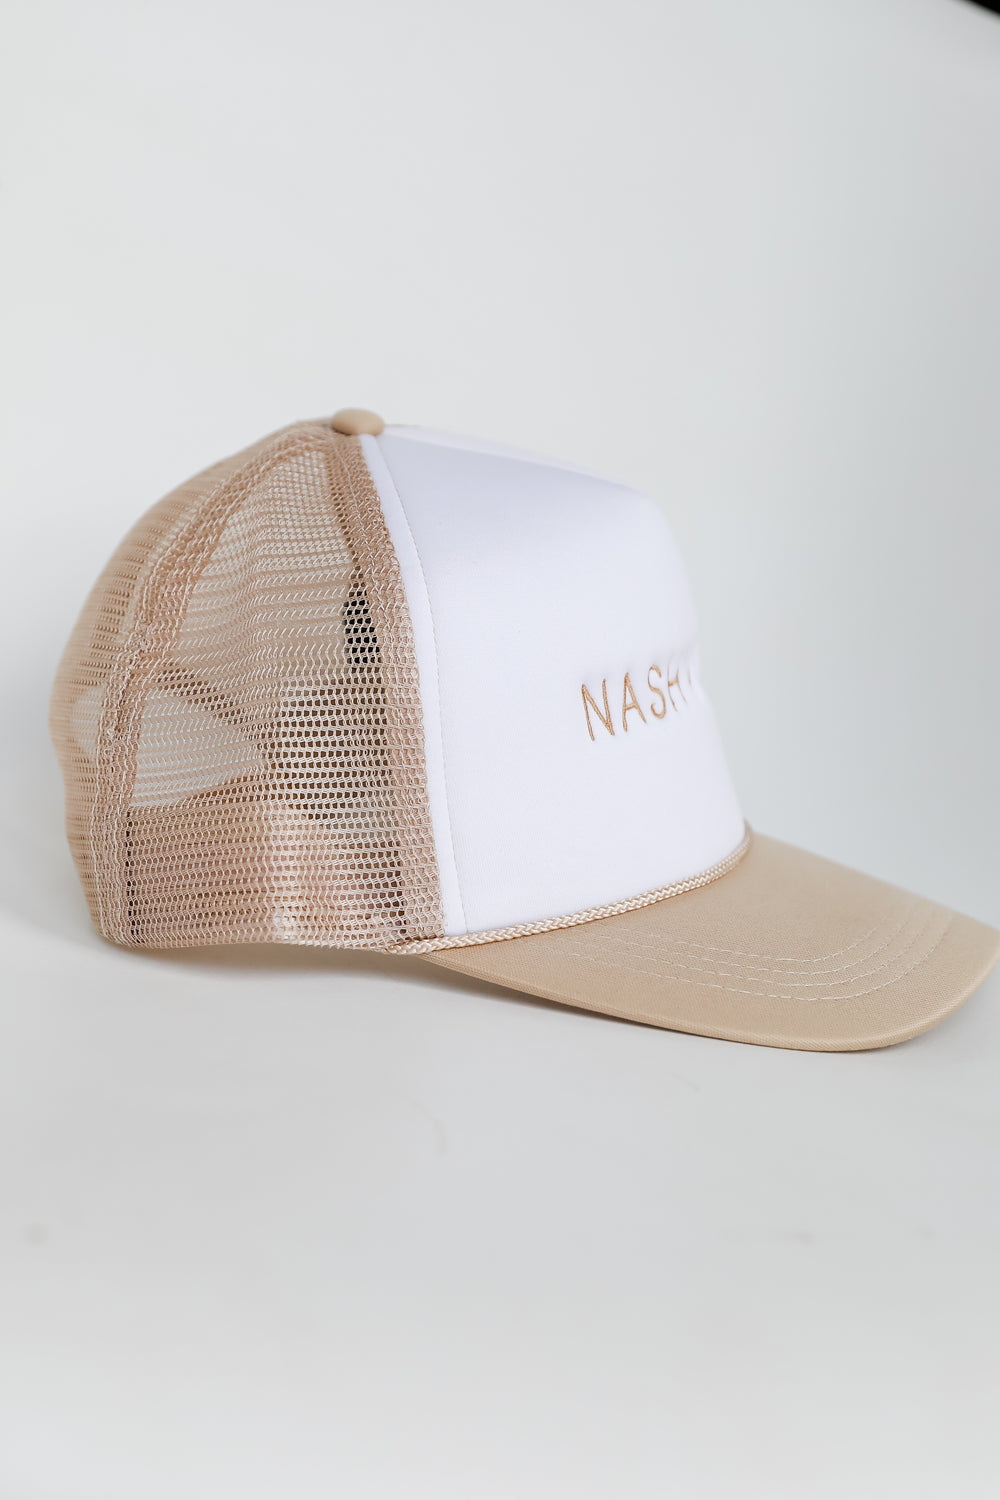 Nashville Embroidered Trucker Hat